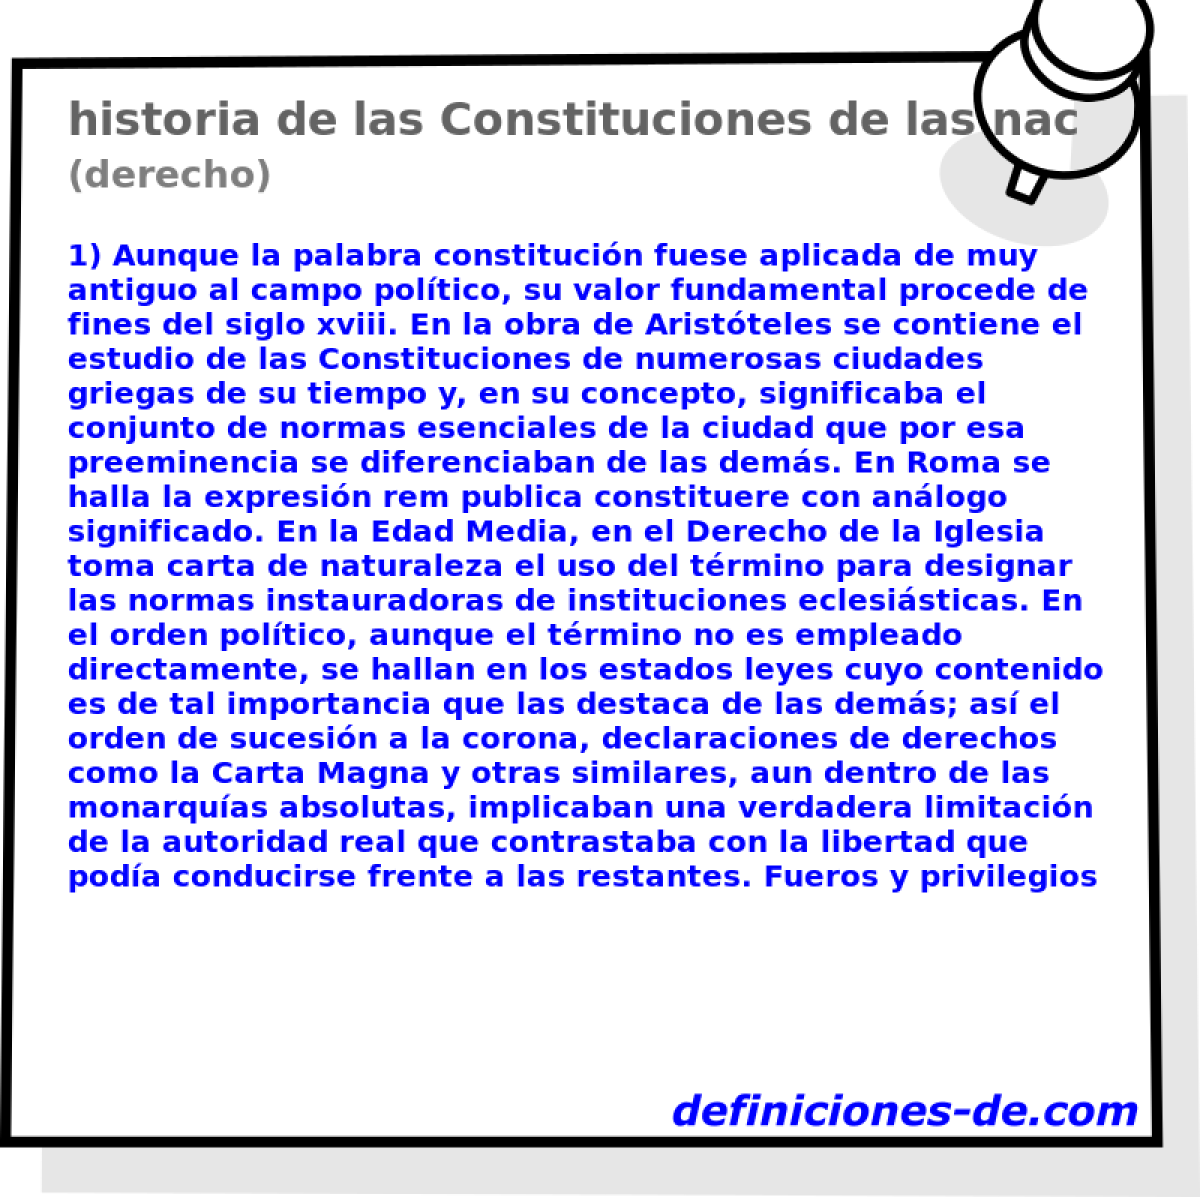 historia de las Constituciones de las naciones (derecho)